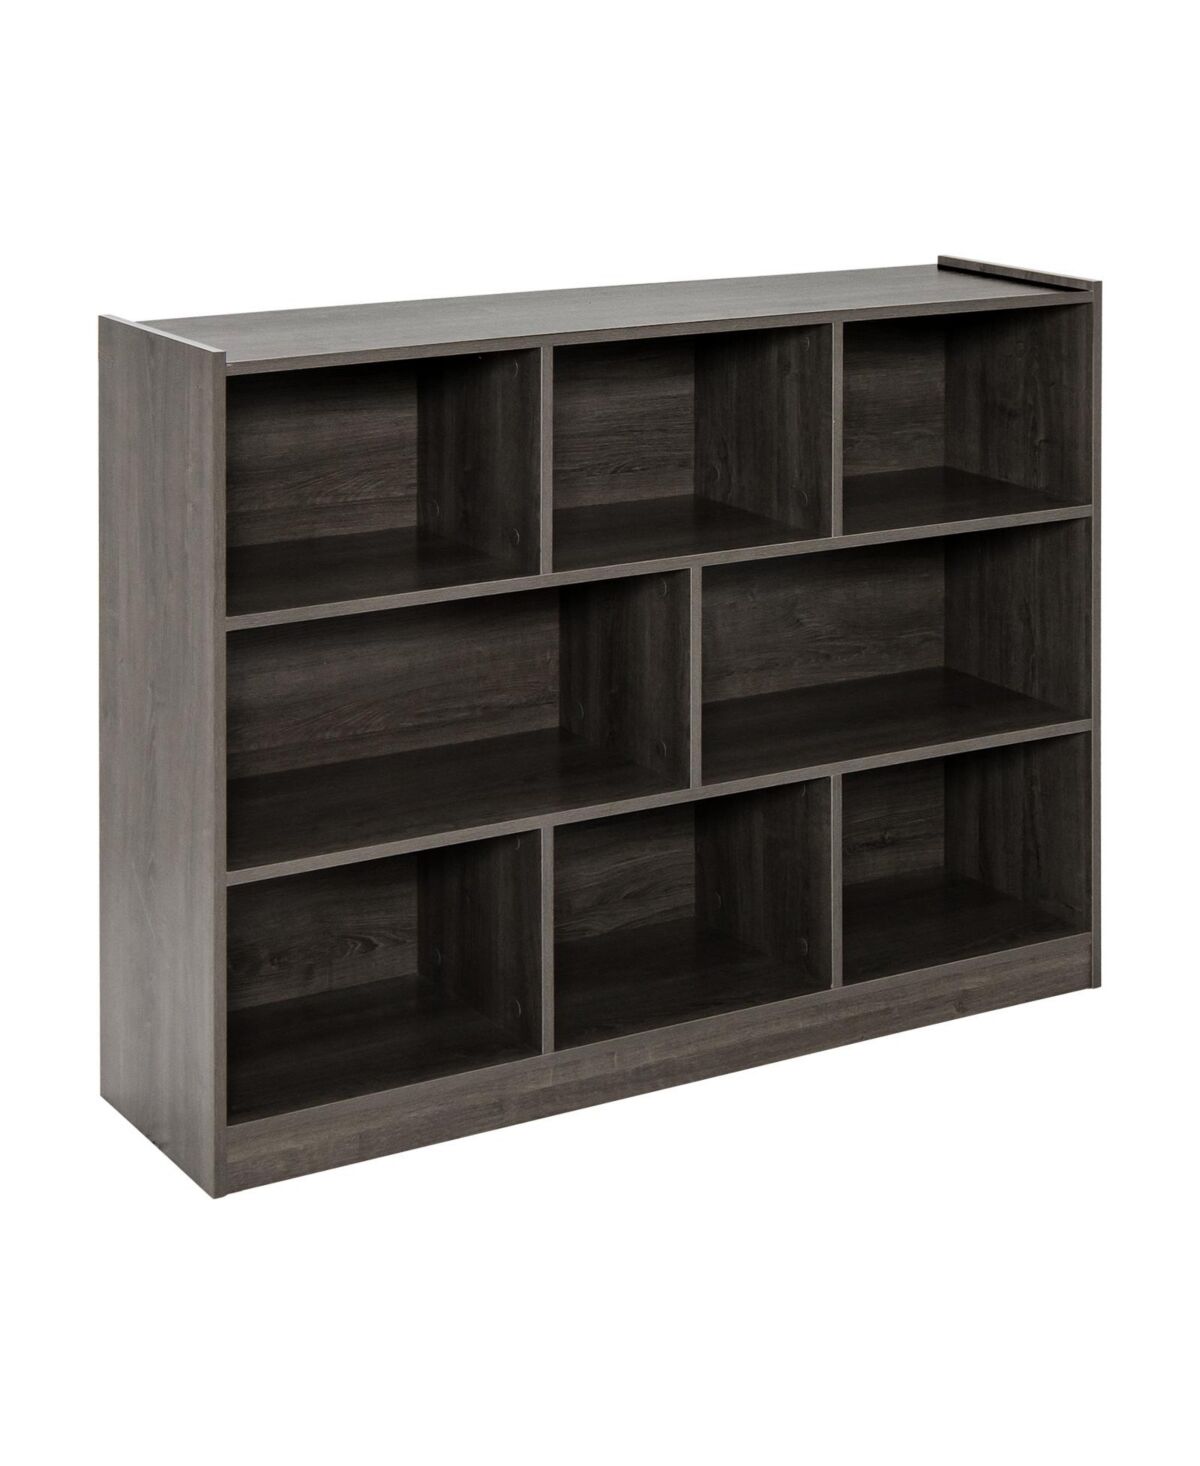 Slickblue 3-Tier Open Bookcase 8-Cube Floor Standing Storage Shelves Display Cabinet - Grey